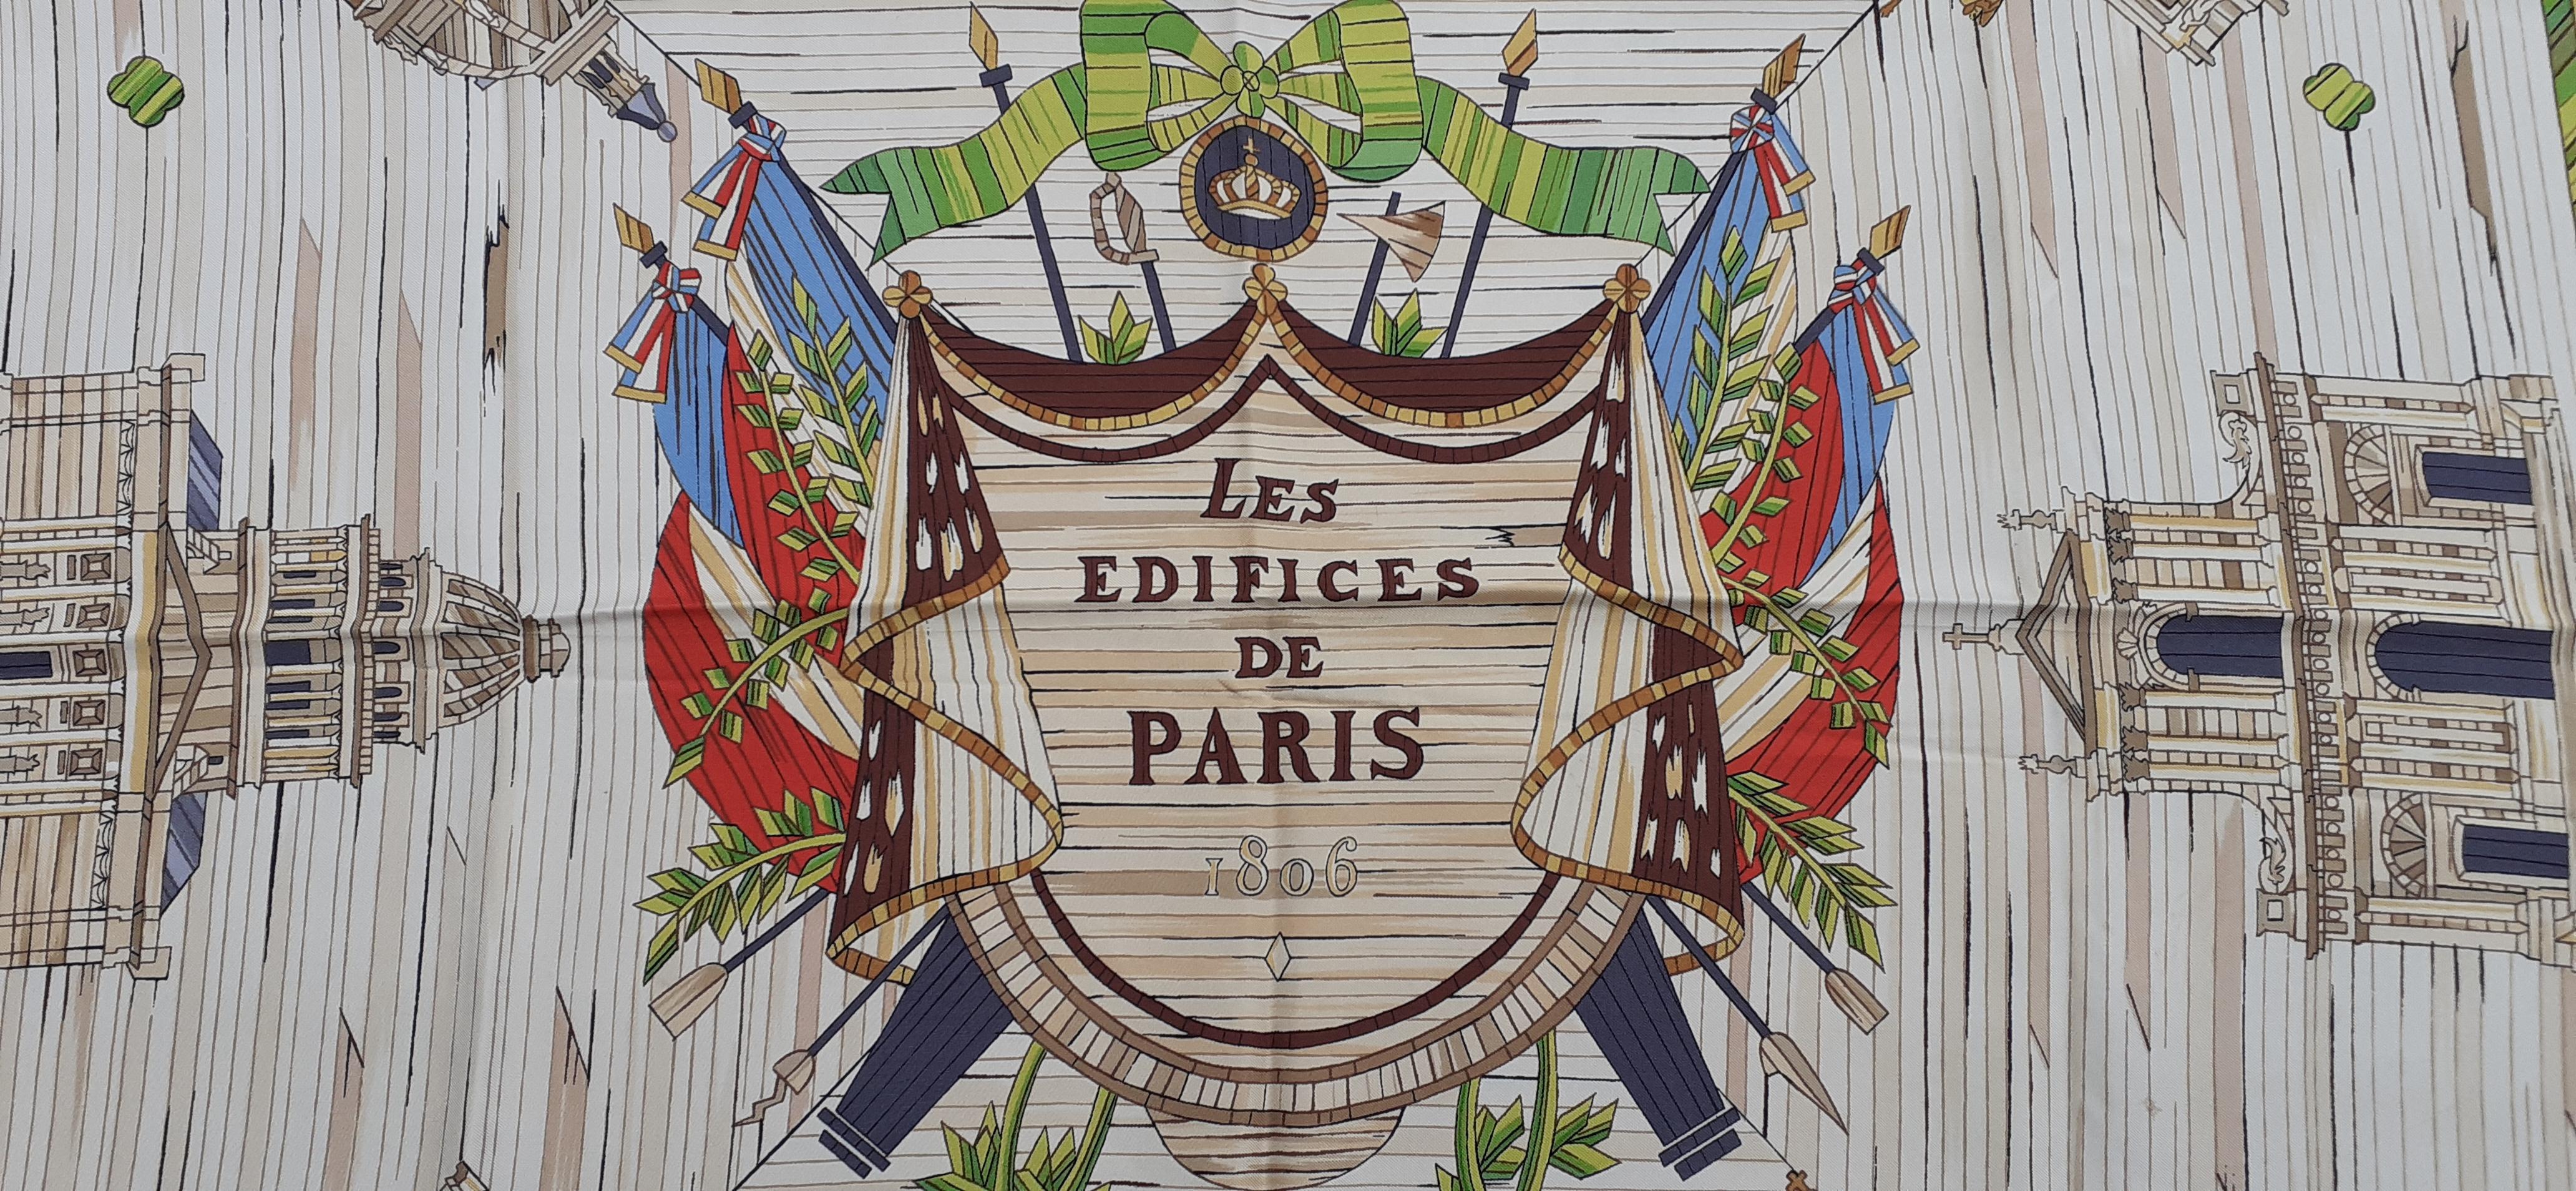 Exceptional Hermès Vintage Silk Scarf Les Edifices de Paris 1806 Grygkar RARE 4